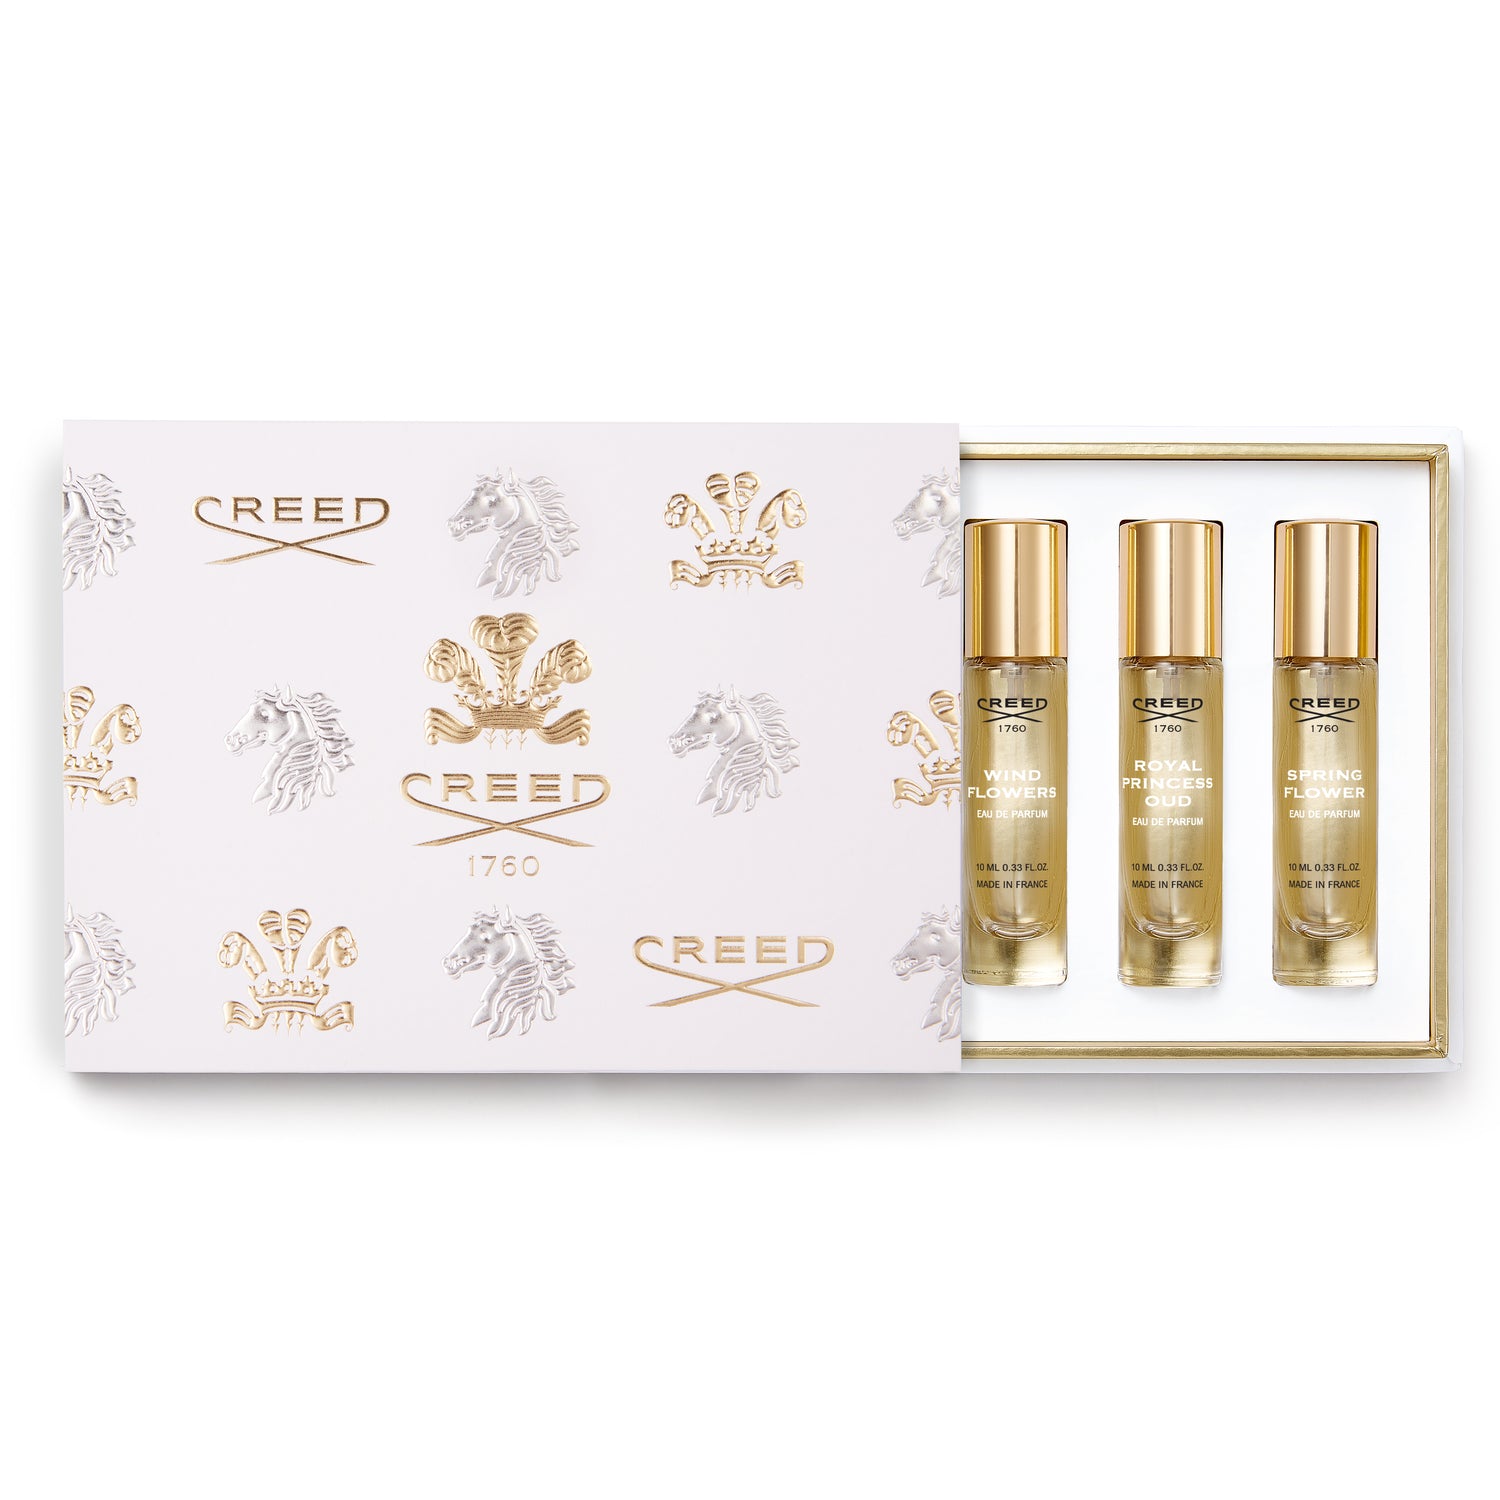 CREED For Him Eau de Parfum Fragrance Gift Set 5 x 10ml